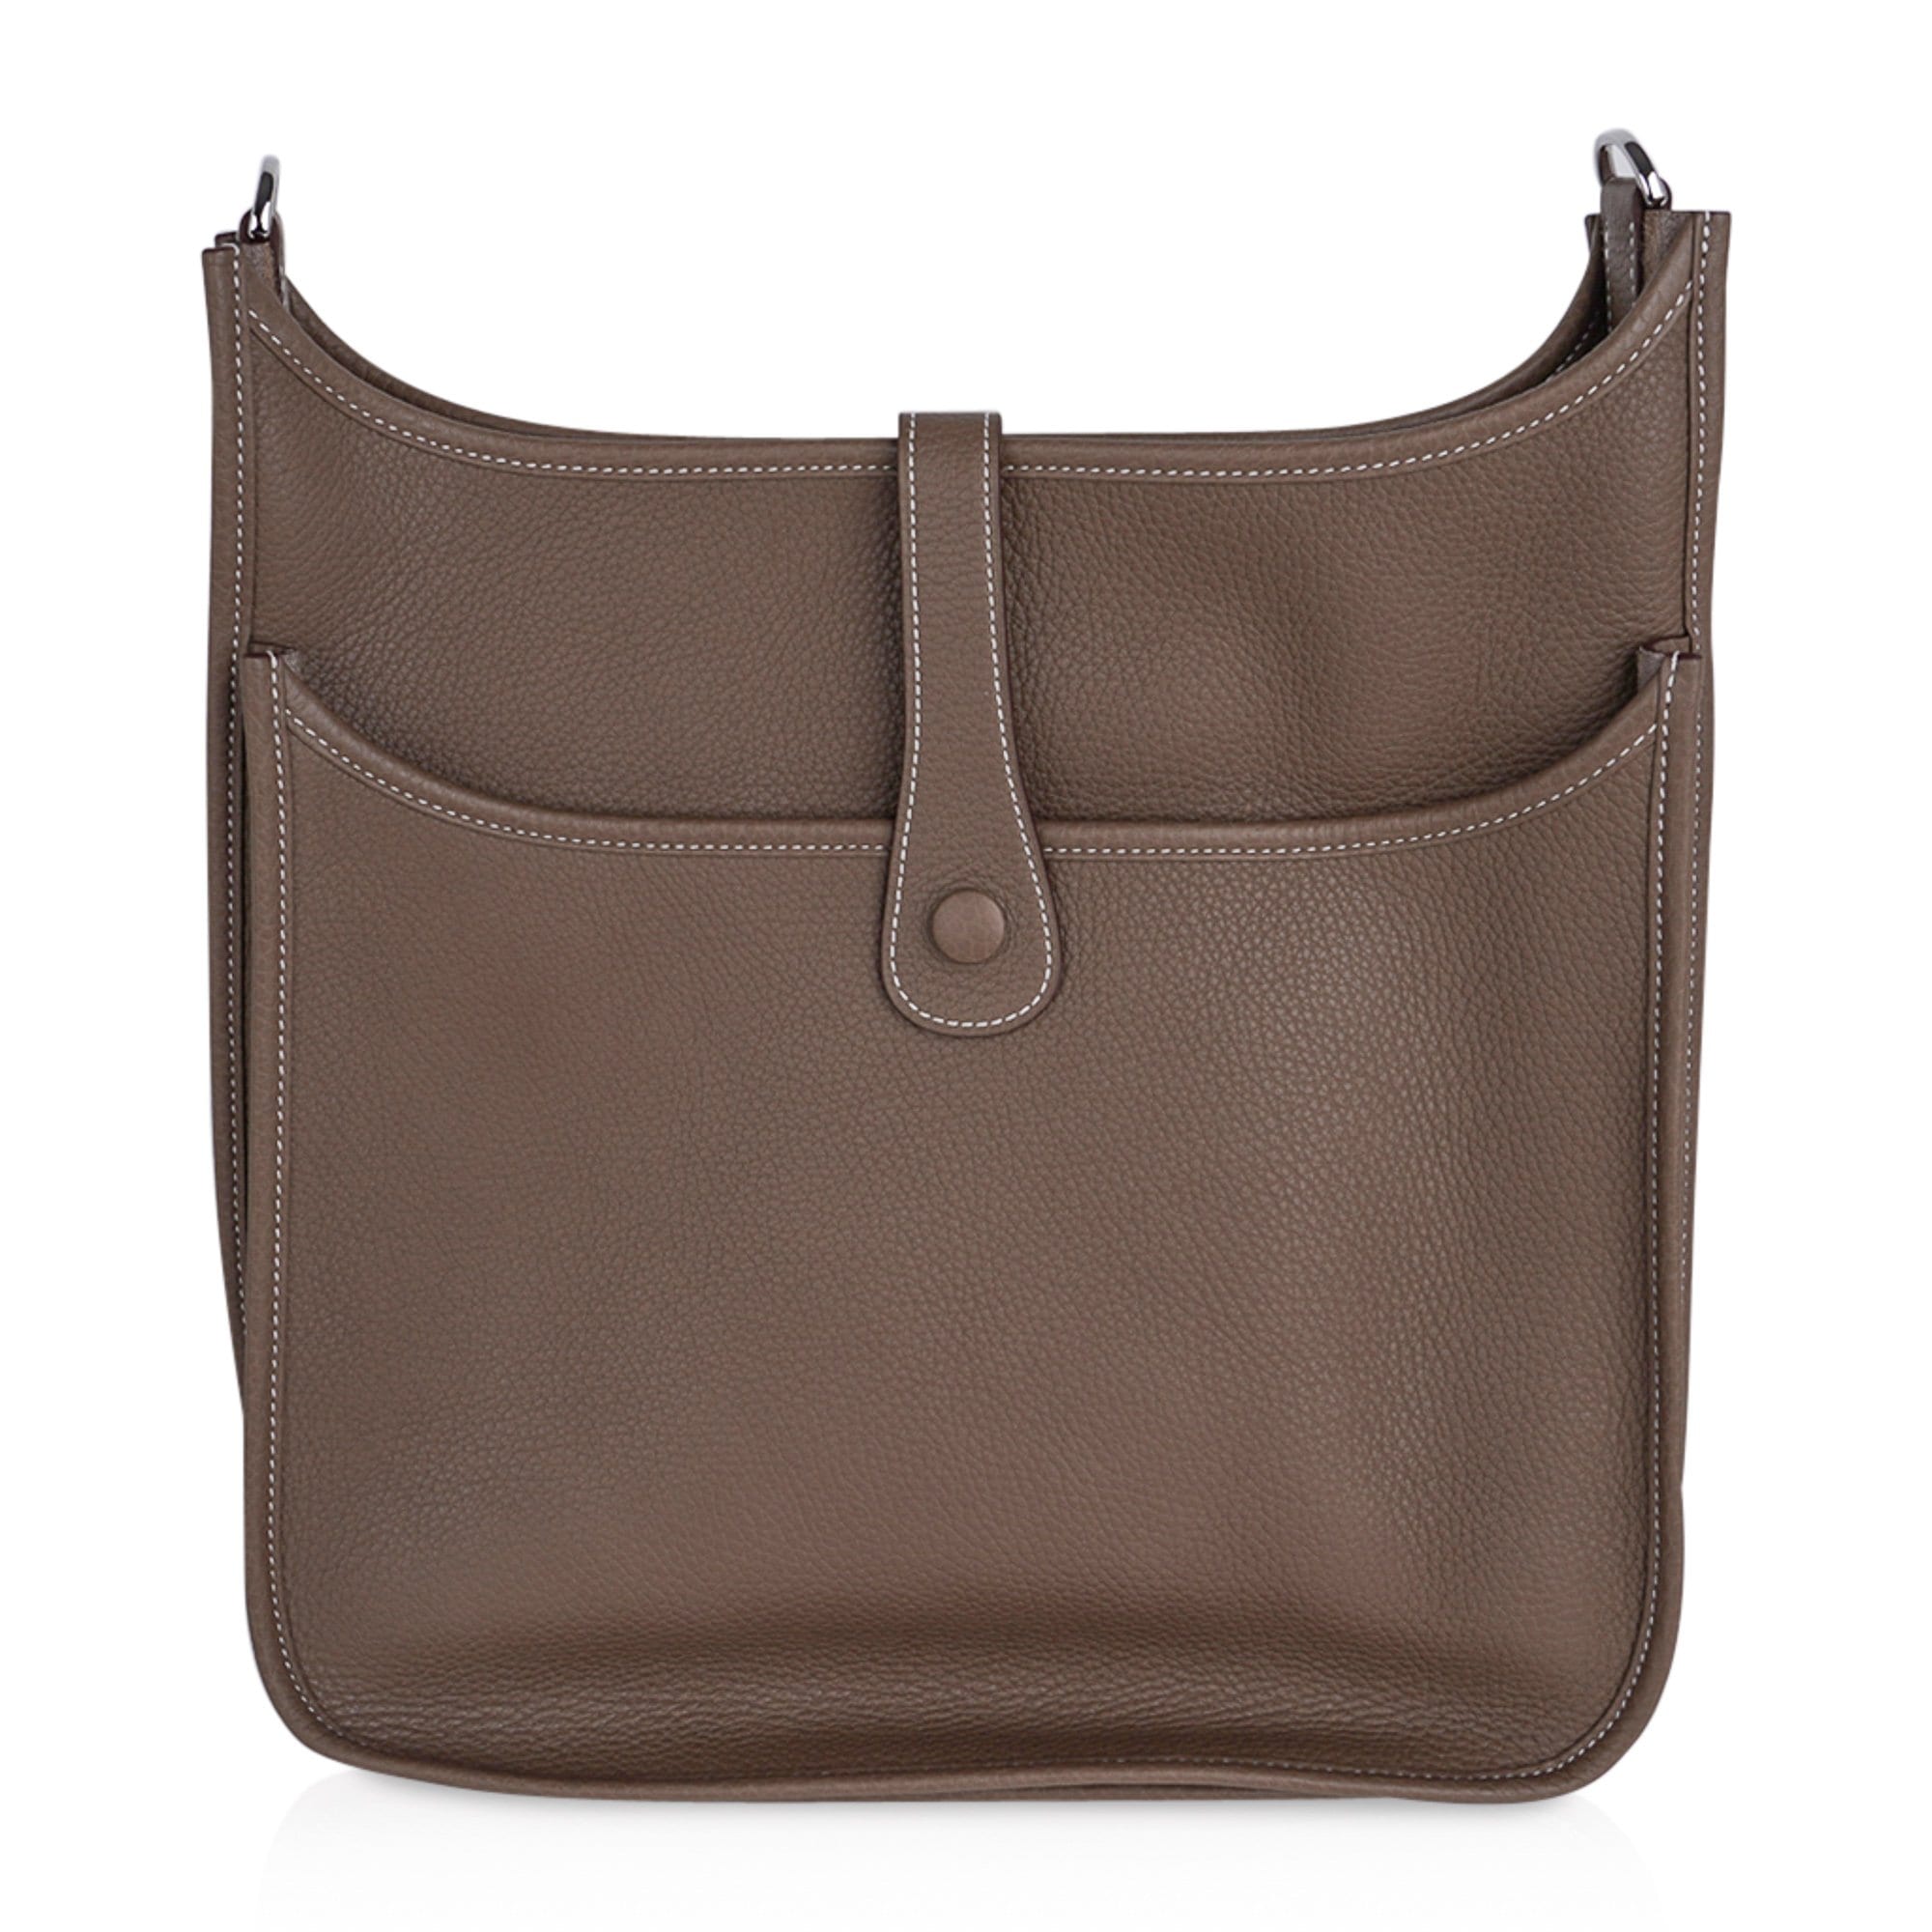 Hermes Etoupe Evelyne PM Messenger Leather Shoulder Handbag